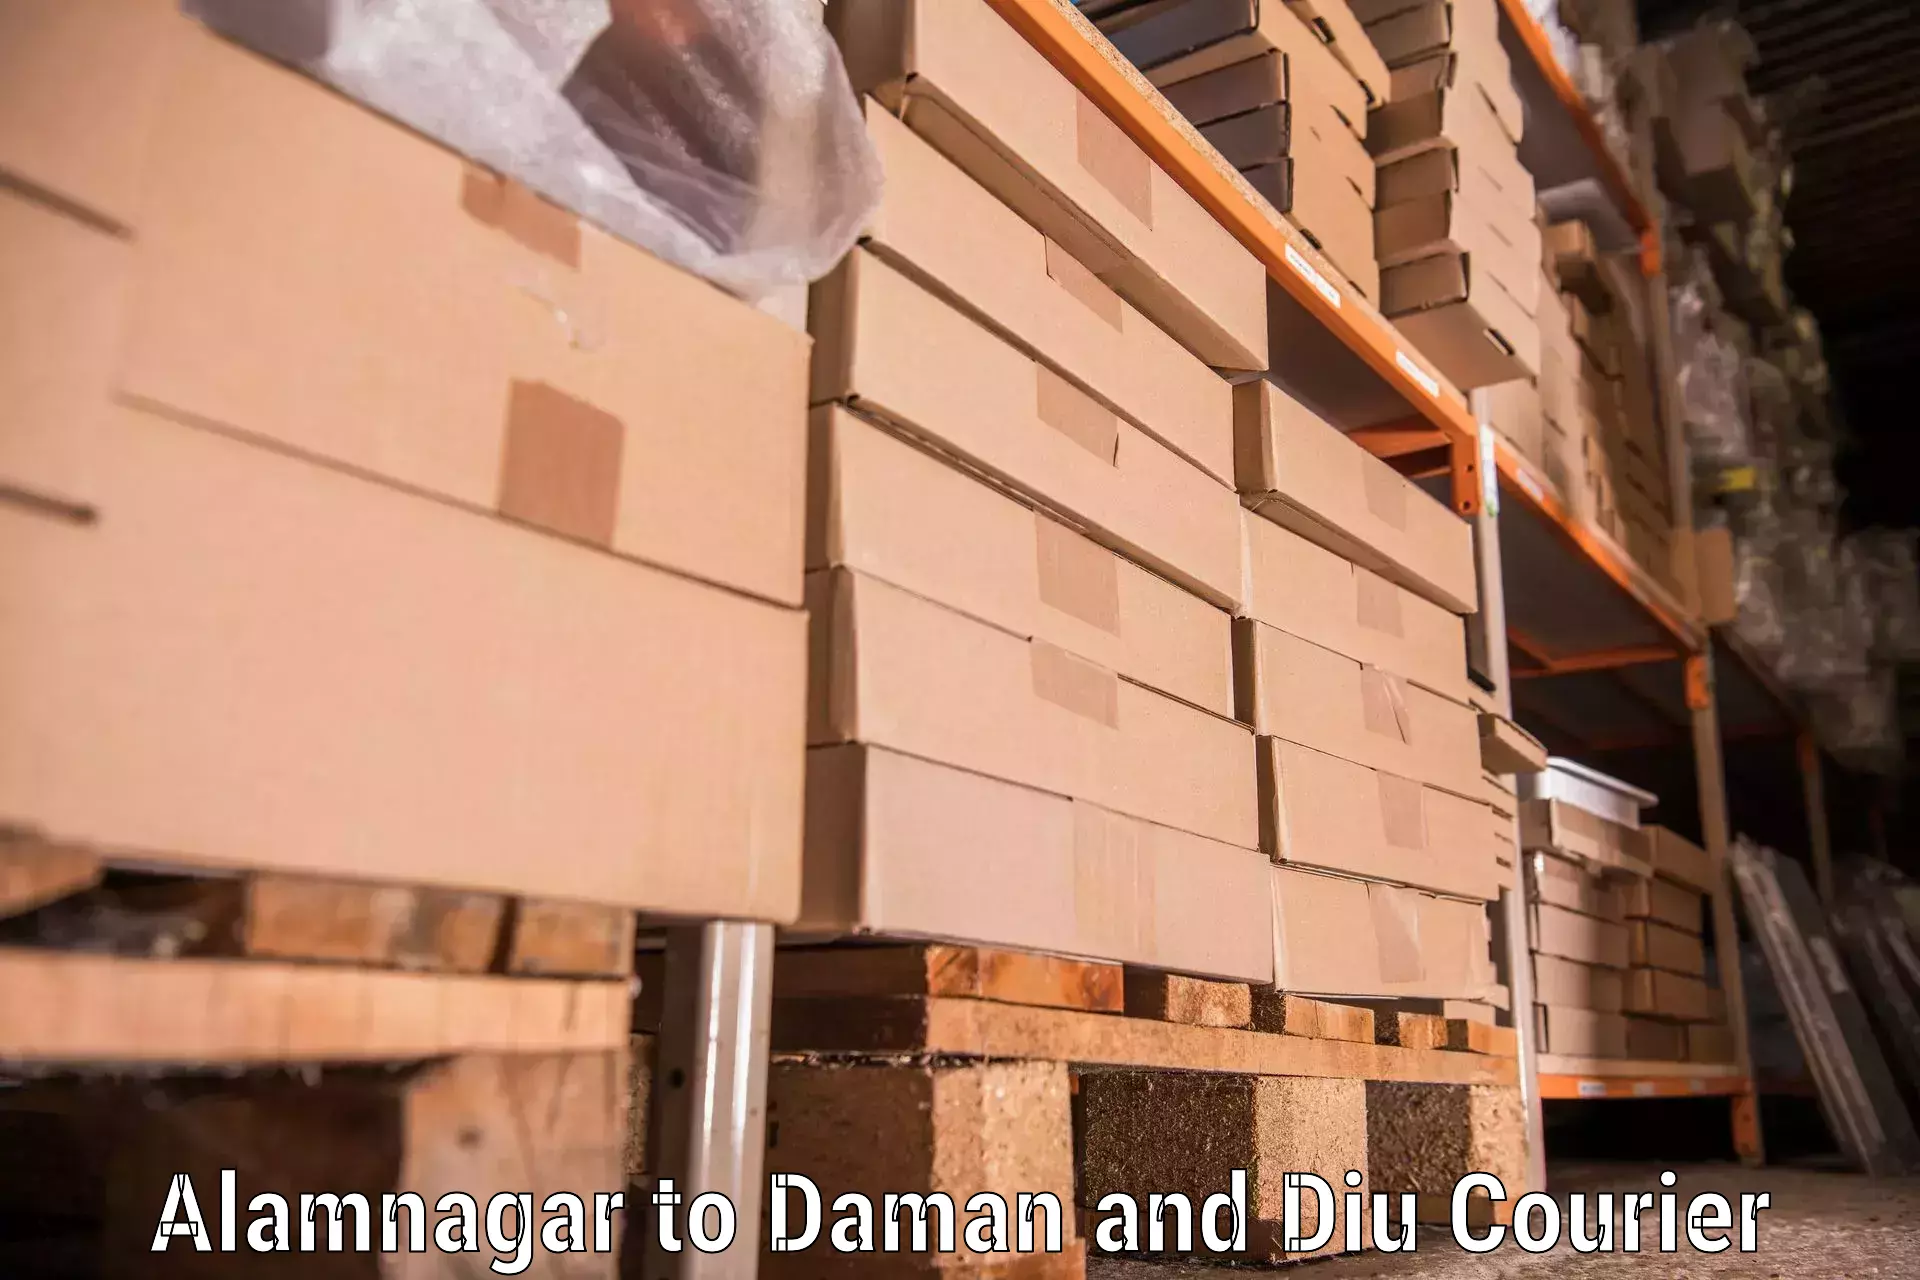 Furniture moving plans Alamnagar to Daman